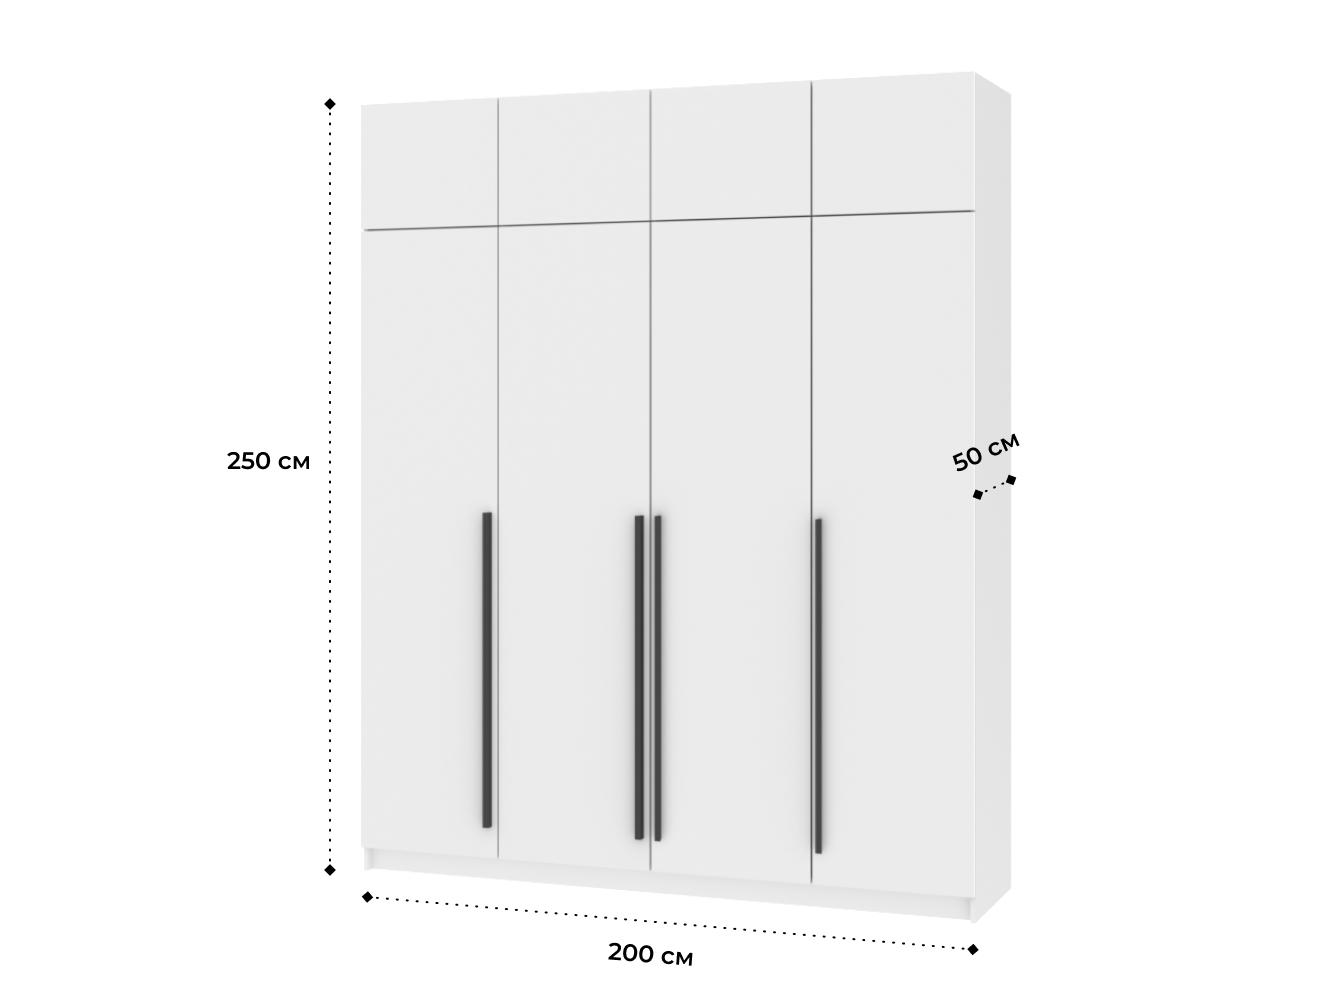  Распашной шкаф Пакс Фардал 31 white ИКЕА (IKEA) изображение товара